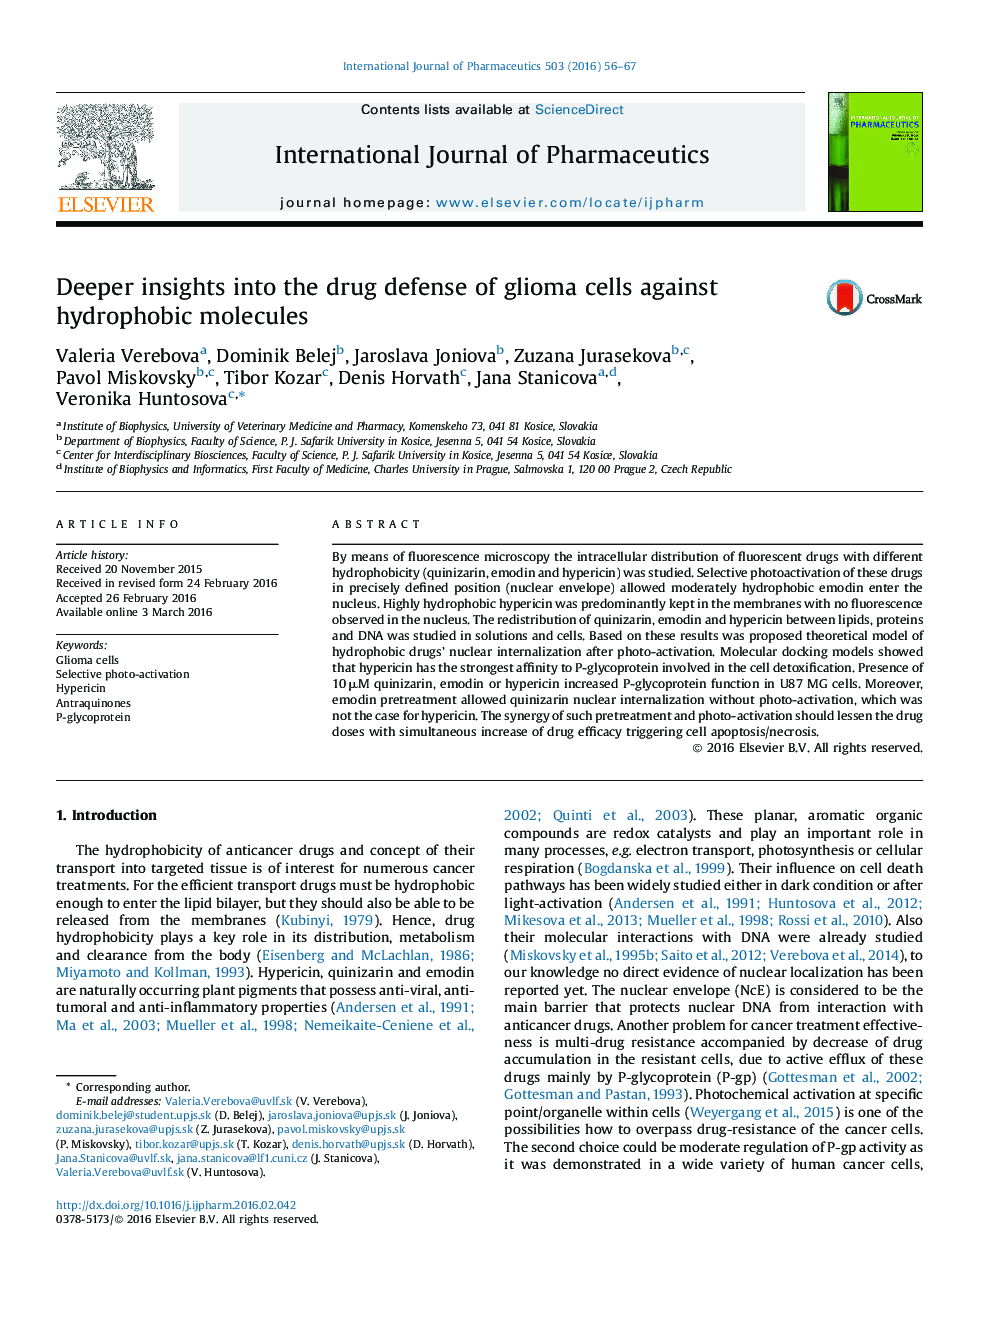 بینش عمیق تر در مورد دفاع از مواد مخدر از سلول های گلیوما در برابر مولکول های هیدروفوب 